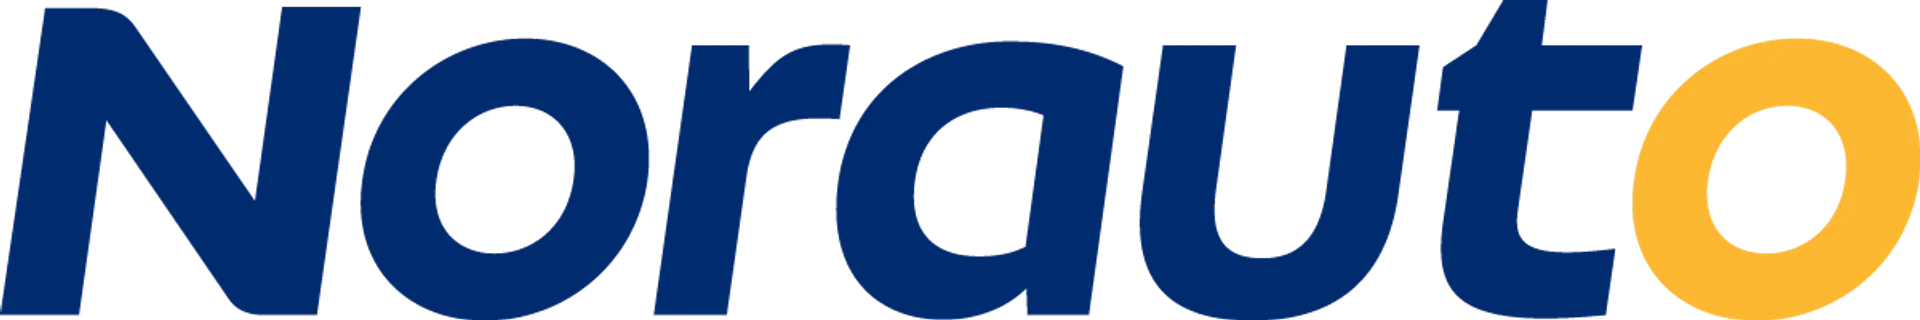 NORAUTO logo